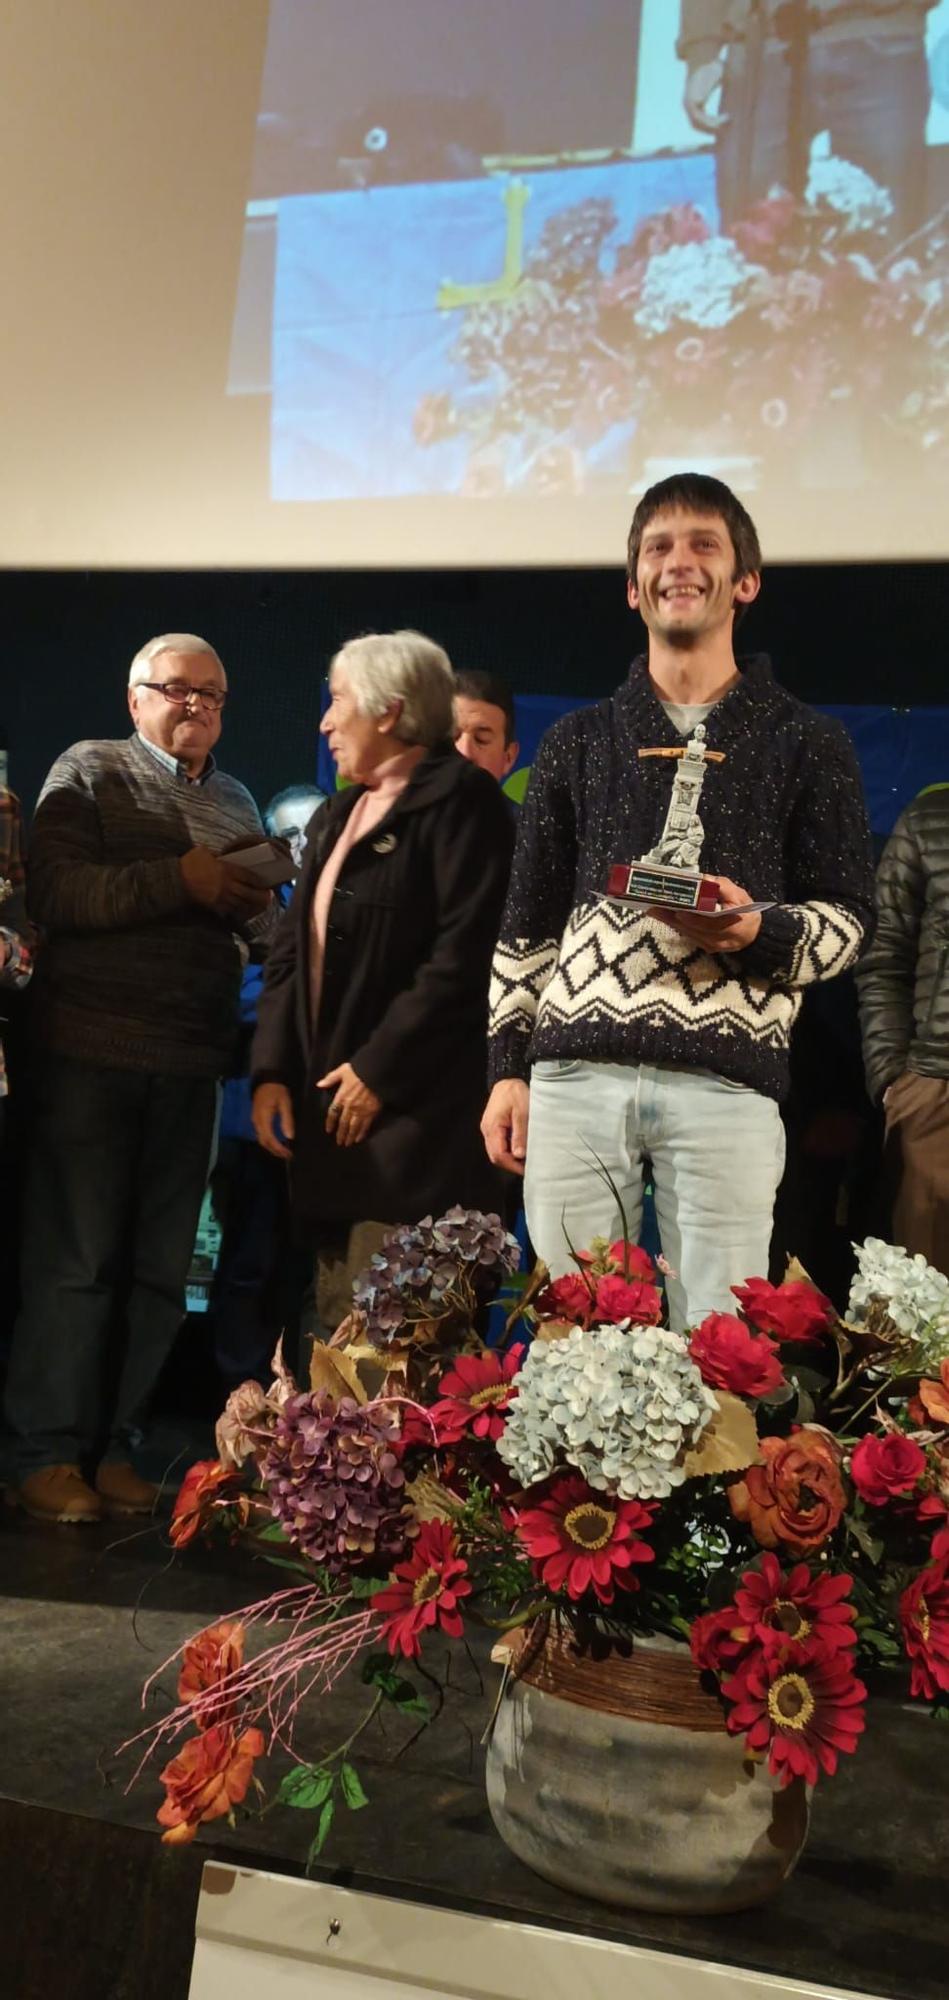 Entrega de premios del VIII Concurso de tonada "Ciudá de Llangréu"